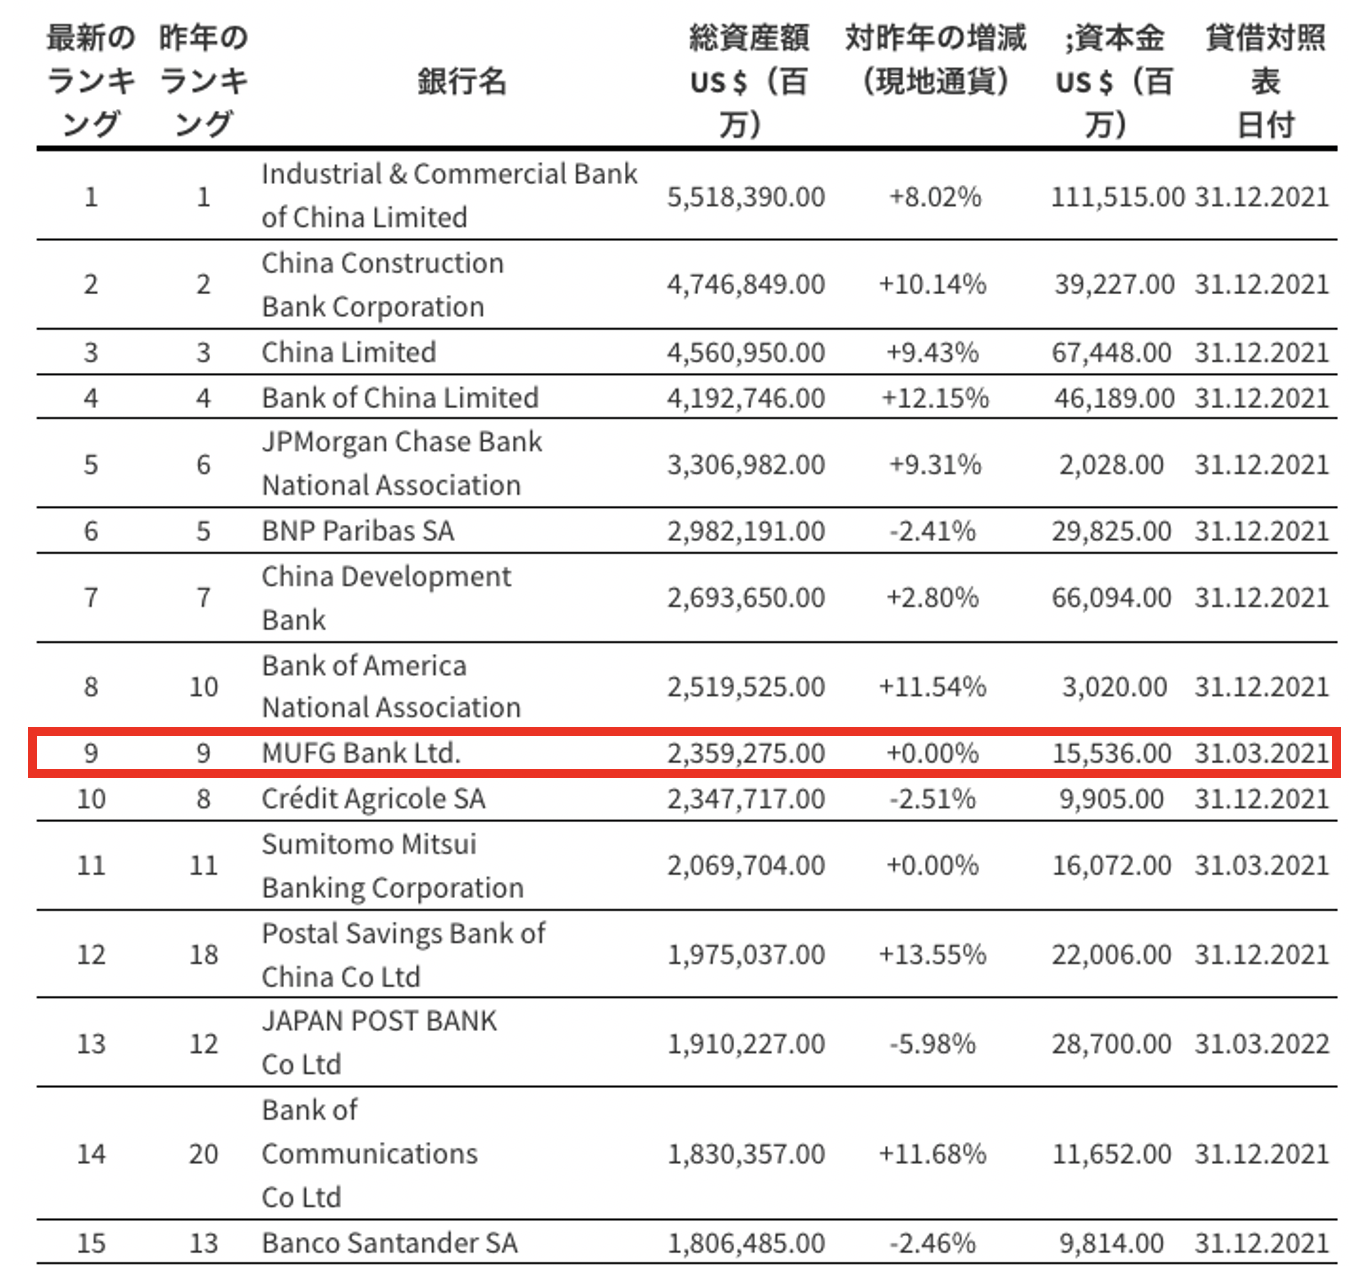 三菱UFJは世界第9位のフィナンシャルグループ